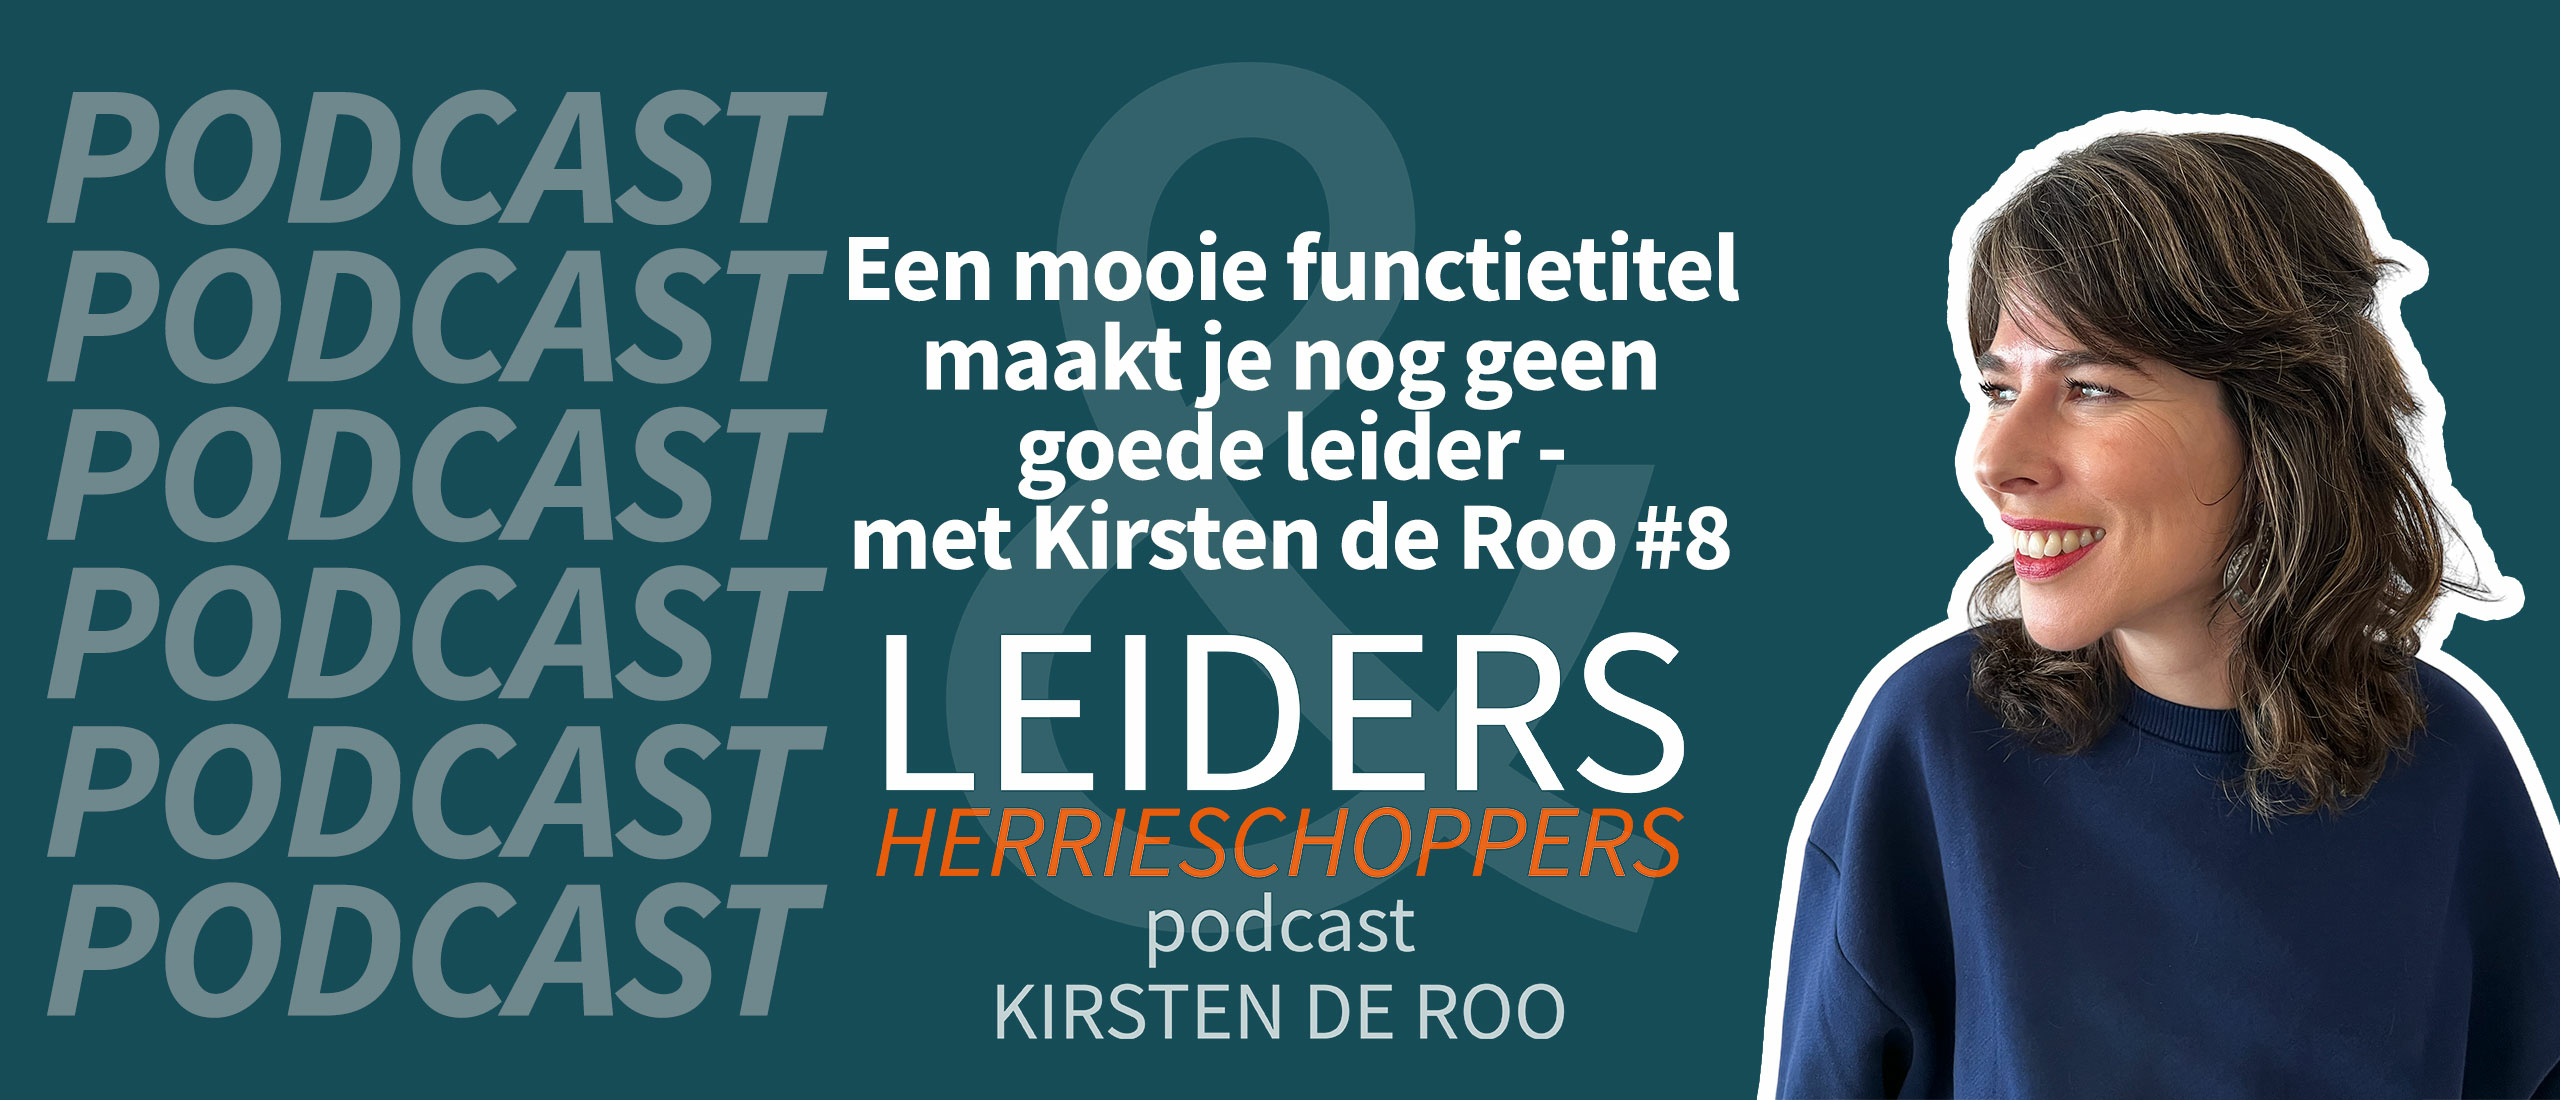 Een mooie functietitel maakt je nog geen goede leider - met Kirsten de Roo #8